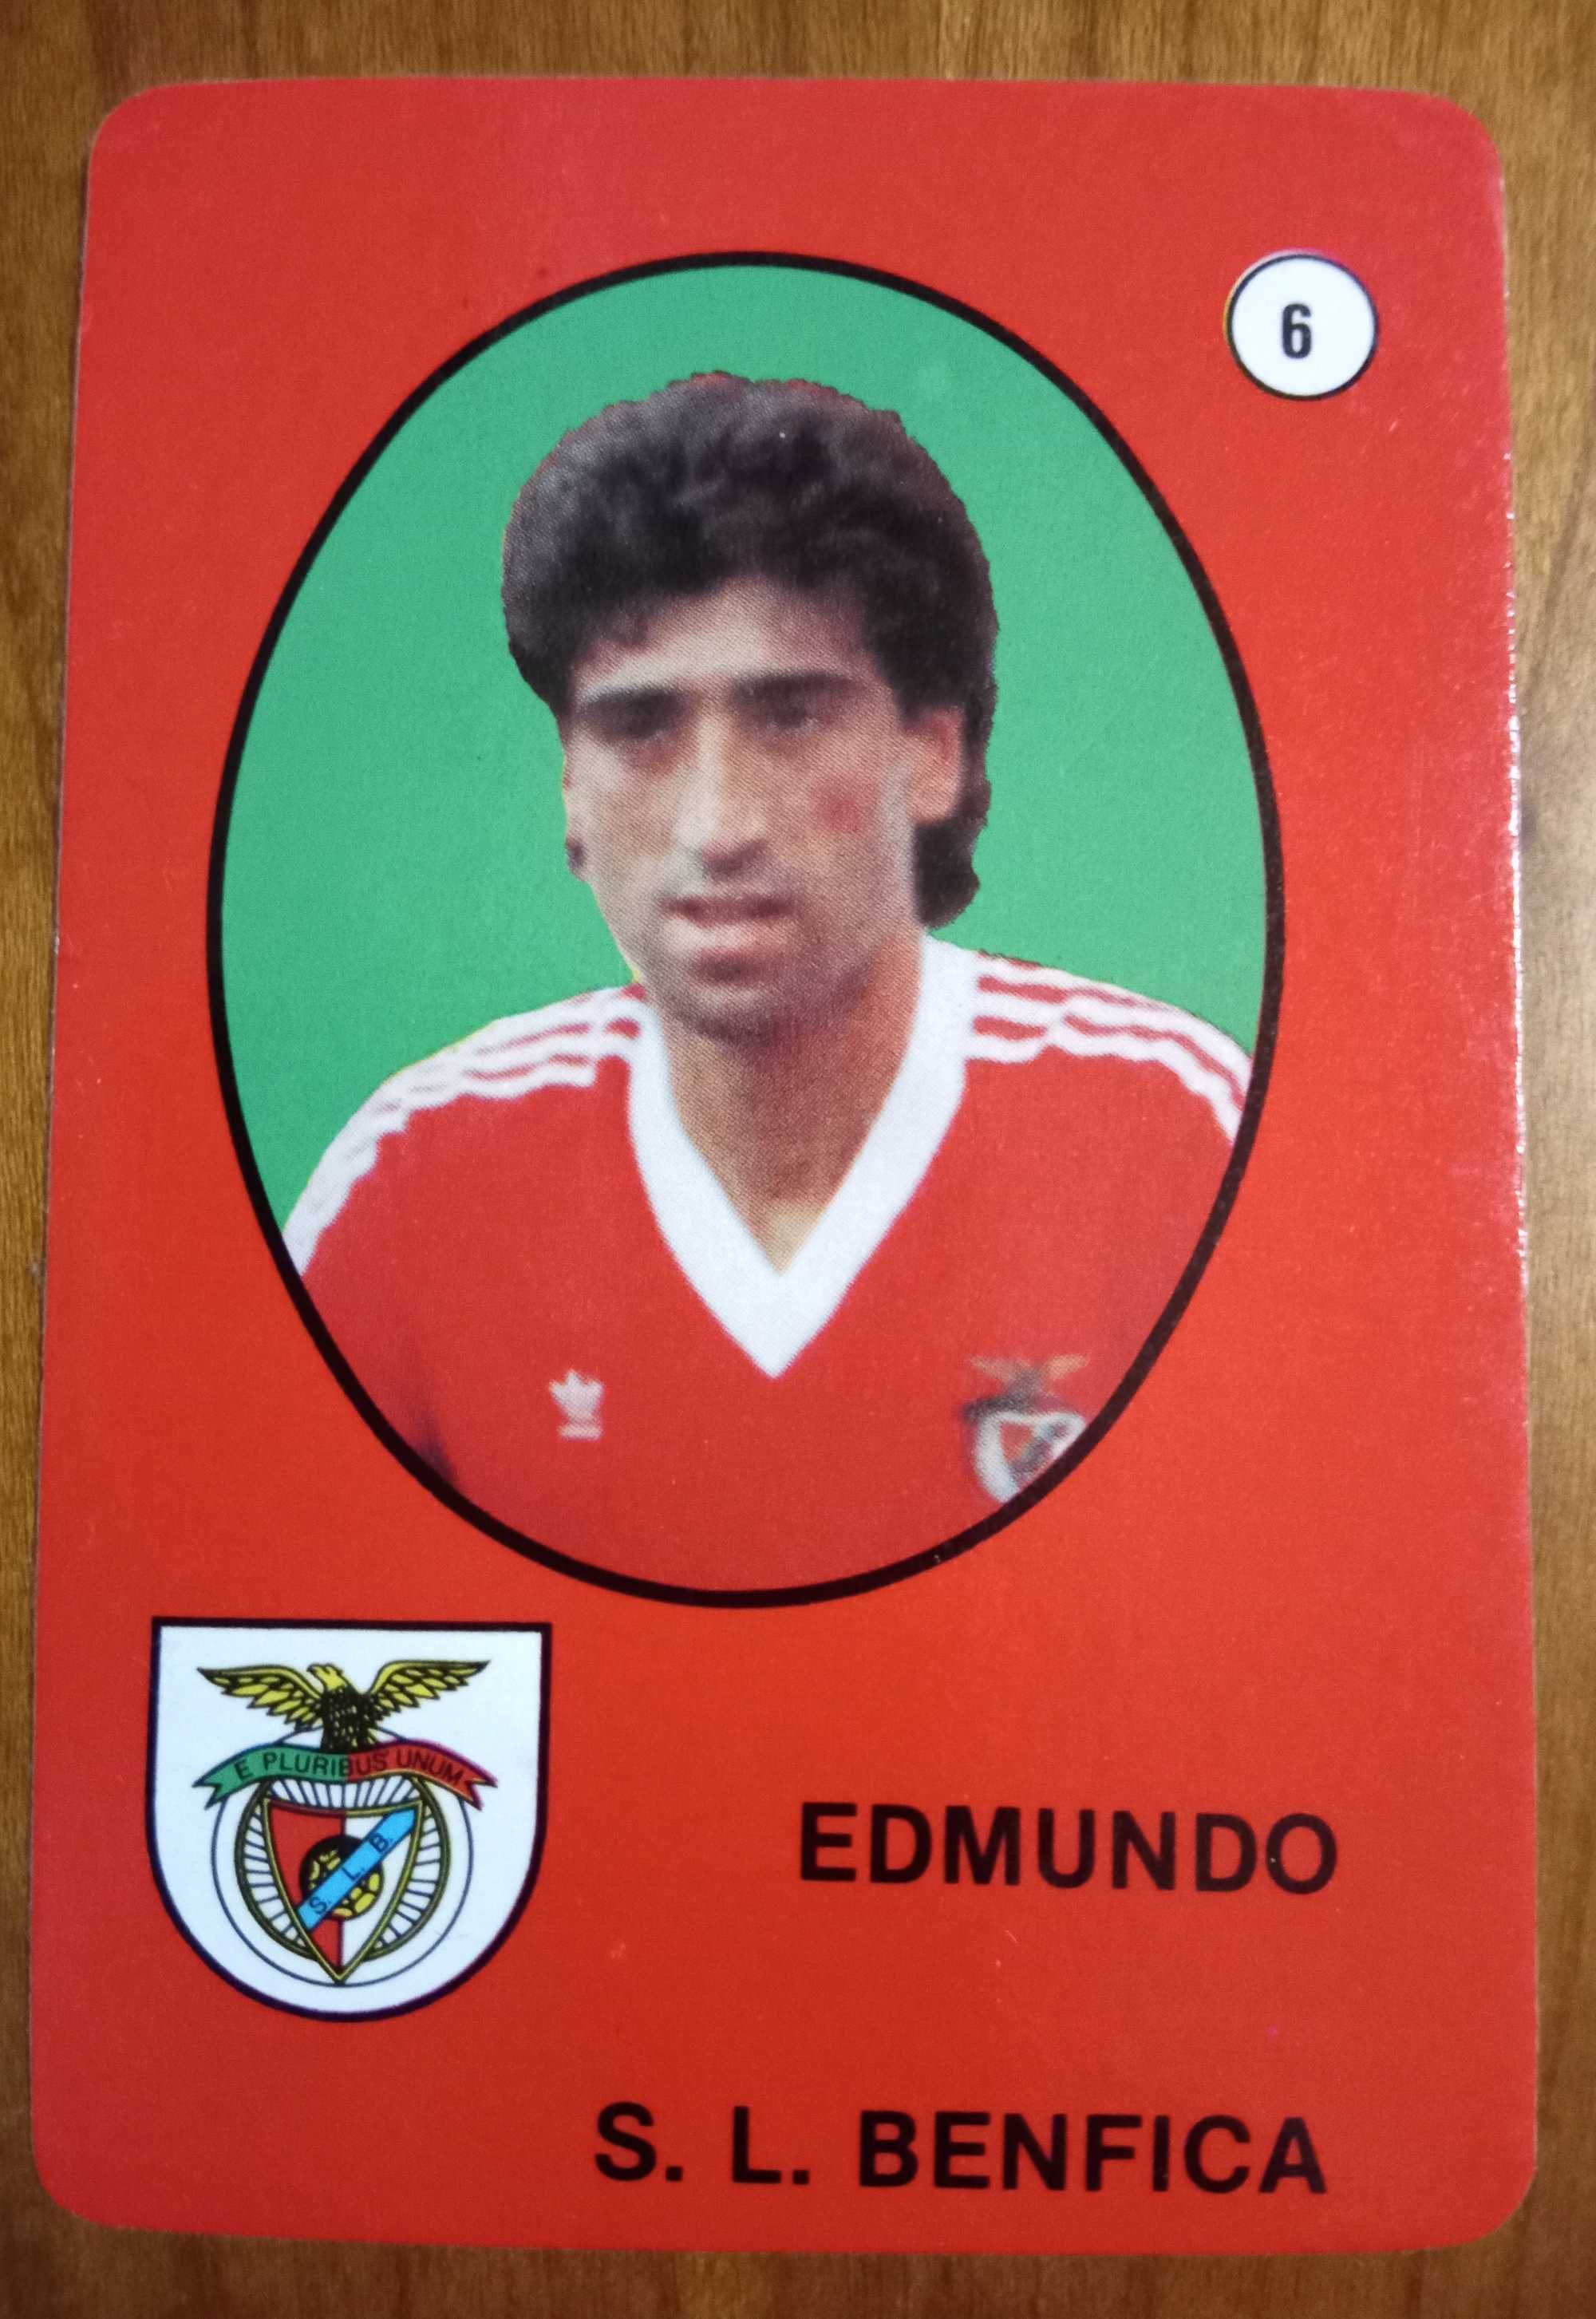 Calendário raro 6 Edmundo (Benfica)